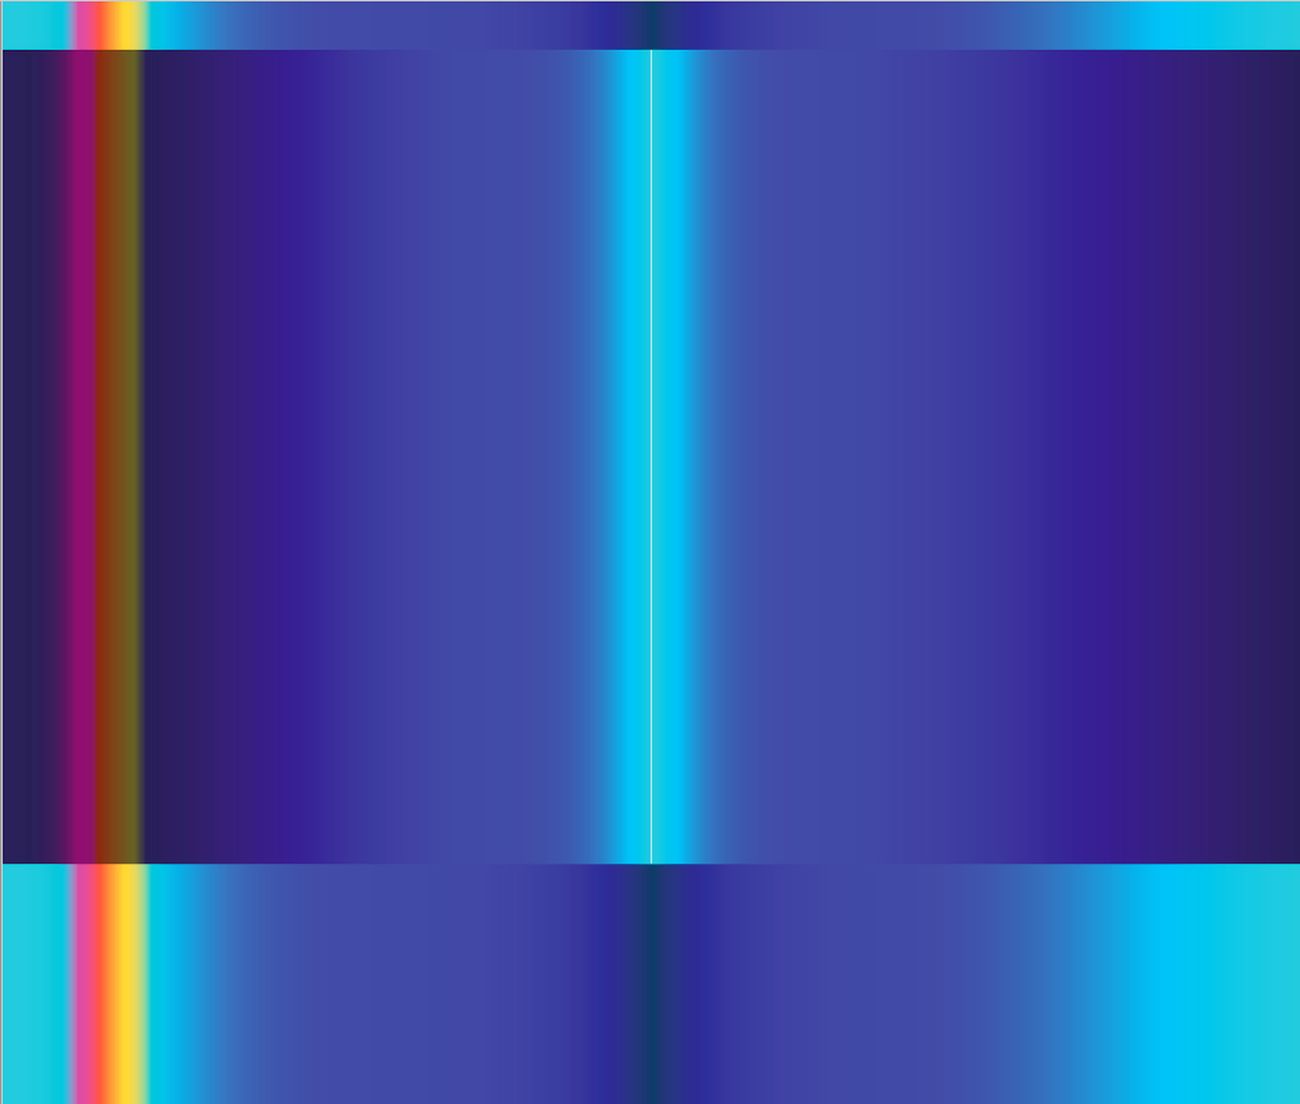 Immagine di un'opera di Tornquist tratta da un booklet del disco di Tiziano Milani, Light+Color+Sound (music for Jorrit Tornquist’s exhibition) (Setola di Maiale, 2018)